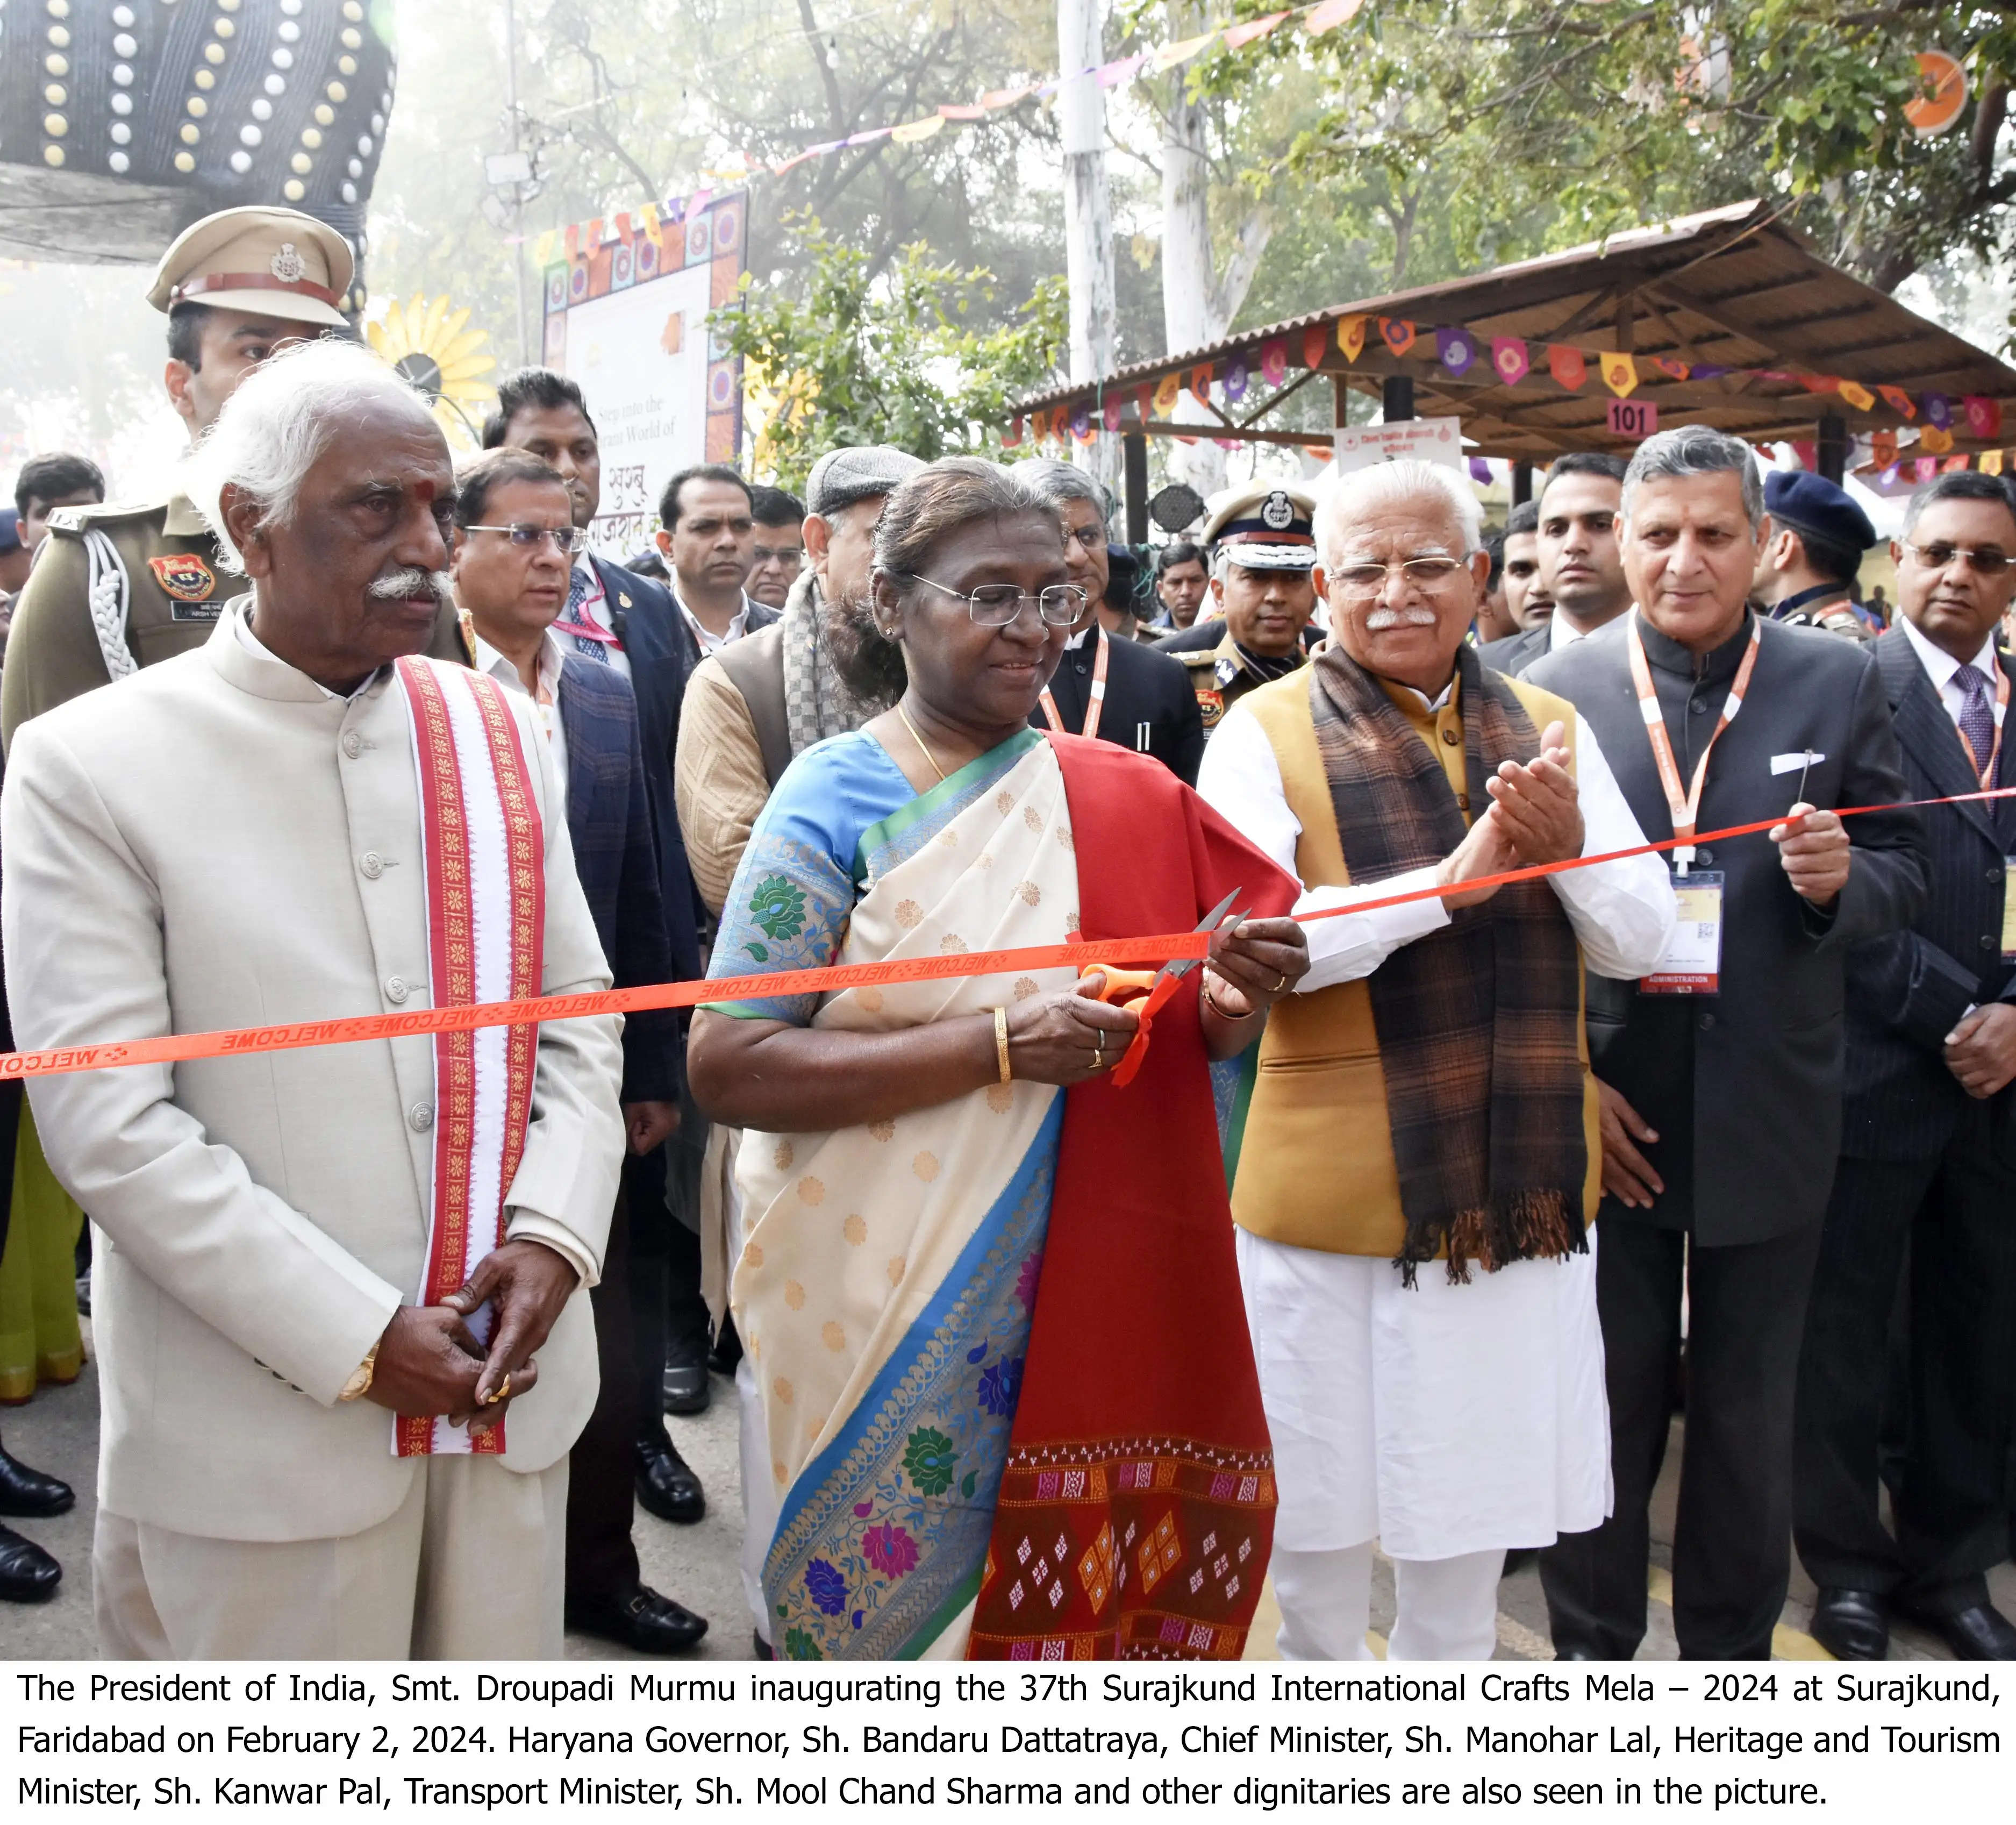  -हरियाणा की पहचान बना सूरजकुंड अंतरराष्ट्रीय शिल्प मेला:मुख्यमंत्री